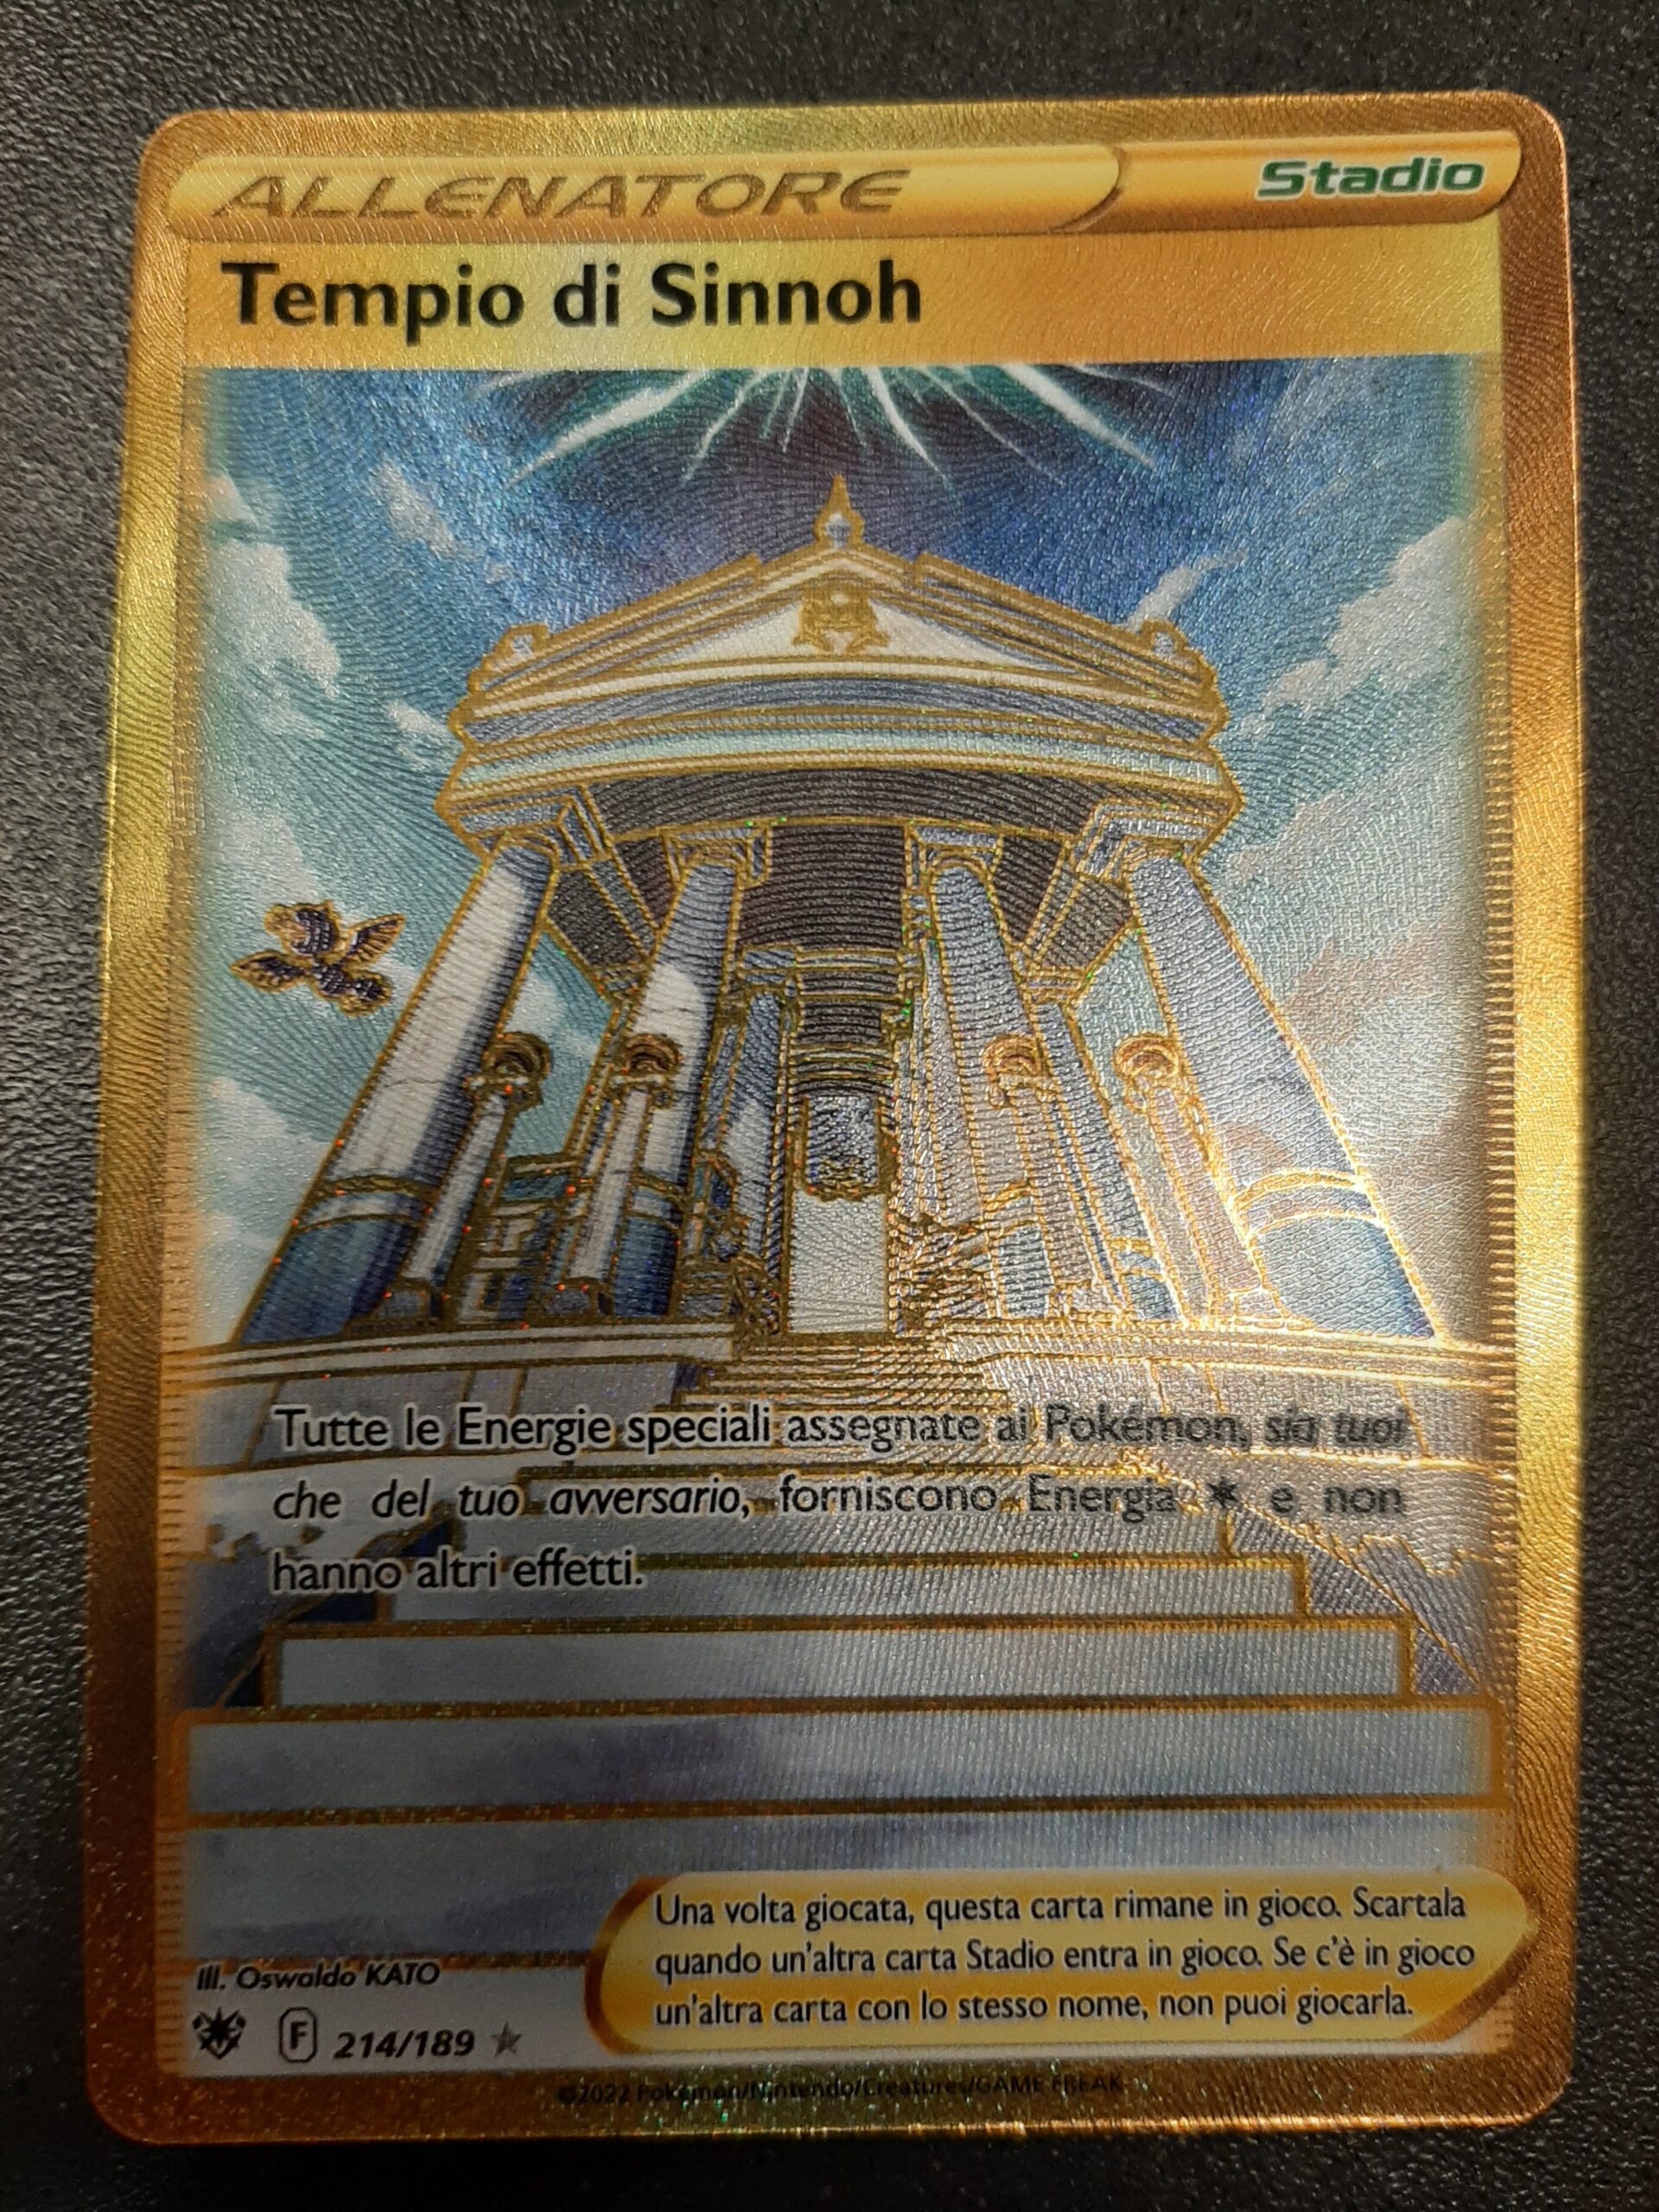 Carta Pokémon Palkia Originale V ASTRO (ASR 040) - Ultra Rare - Lucentezza  Siderale - Near Mint - Italiano - Centro del Fumetto Online